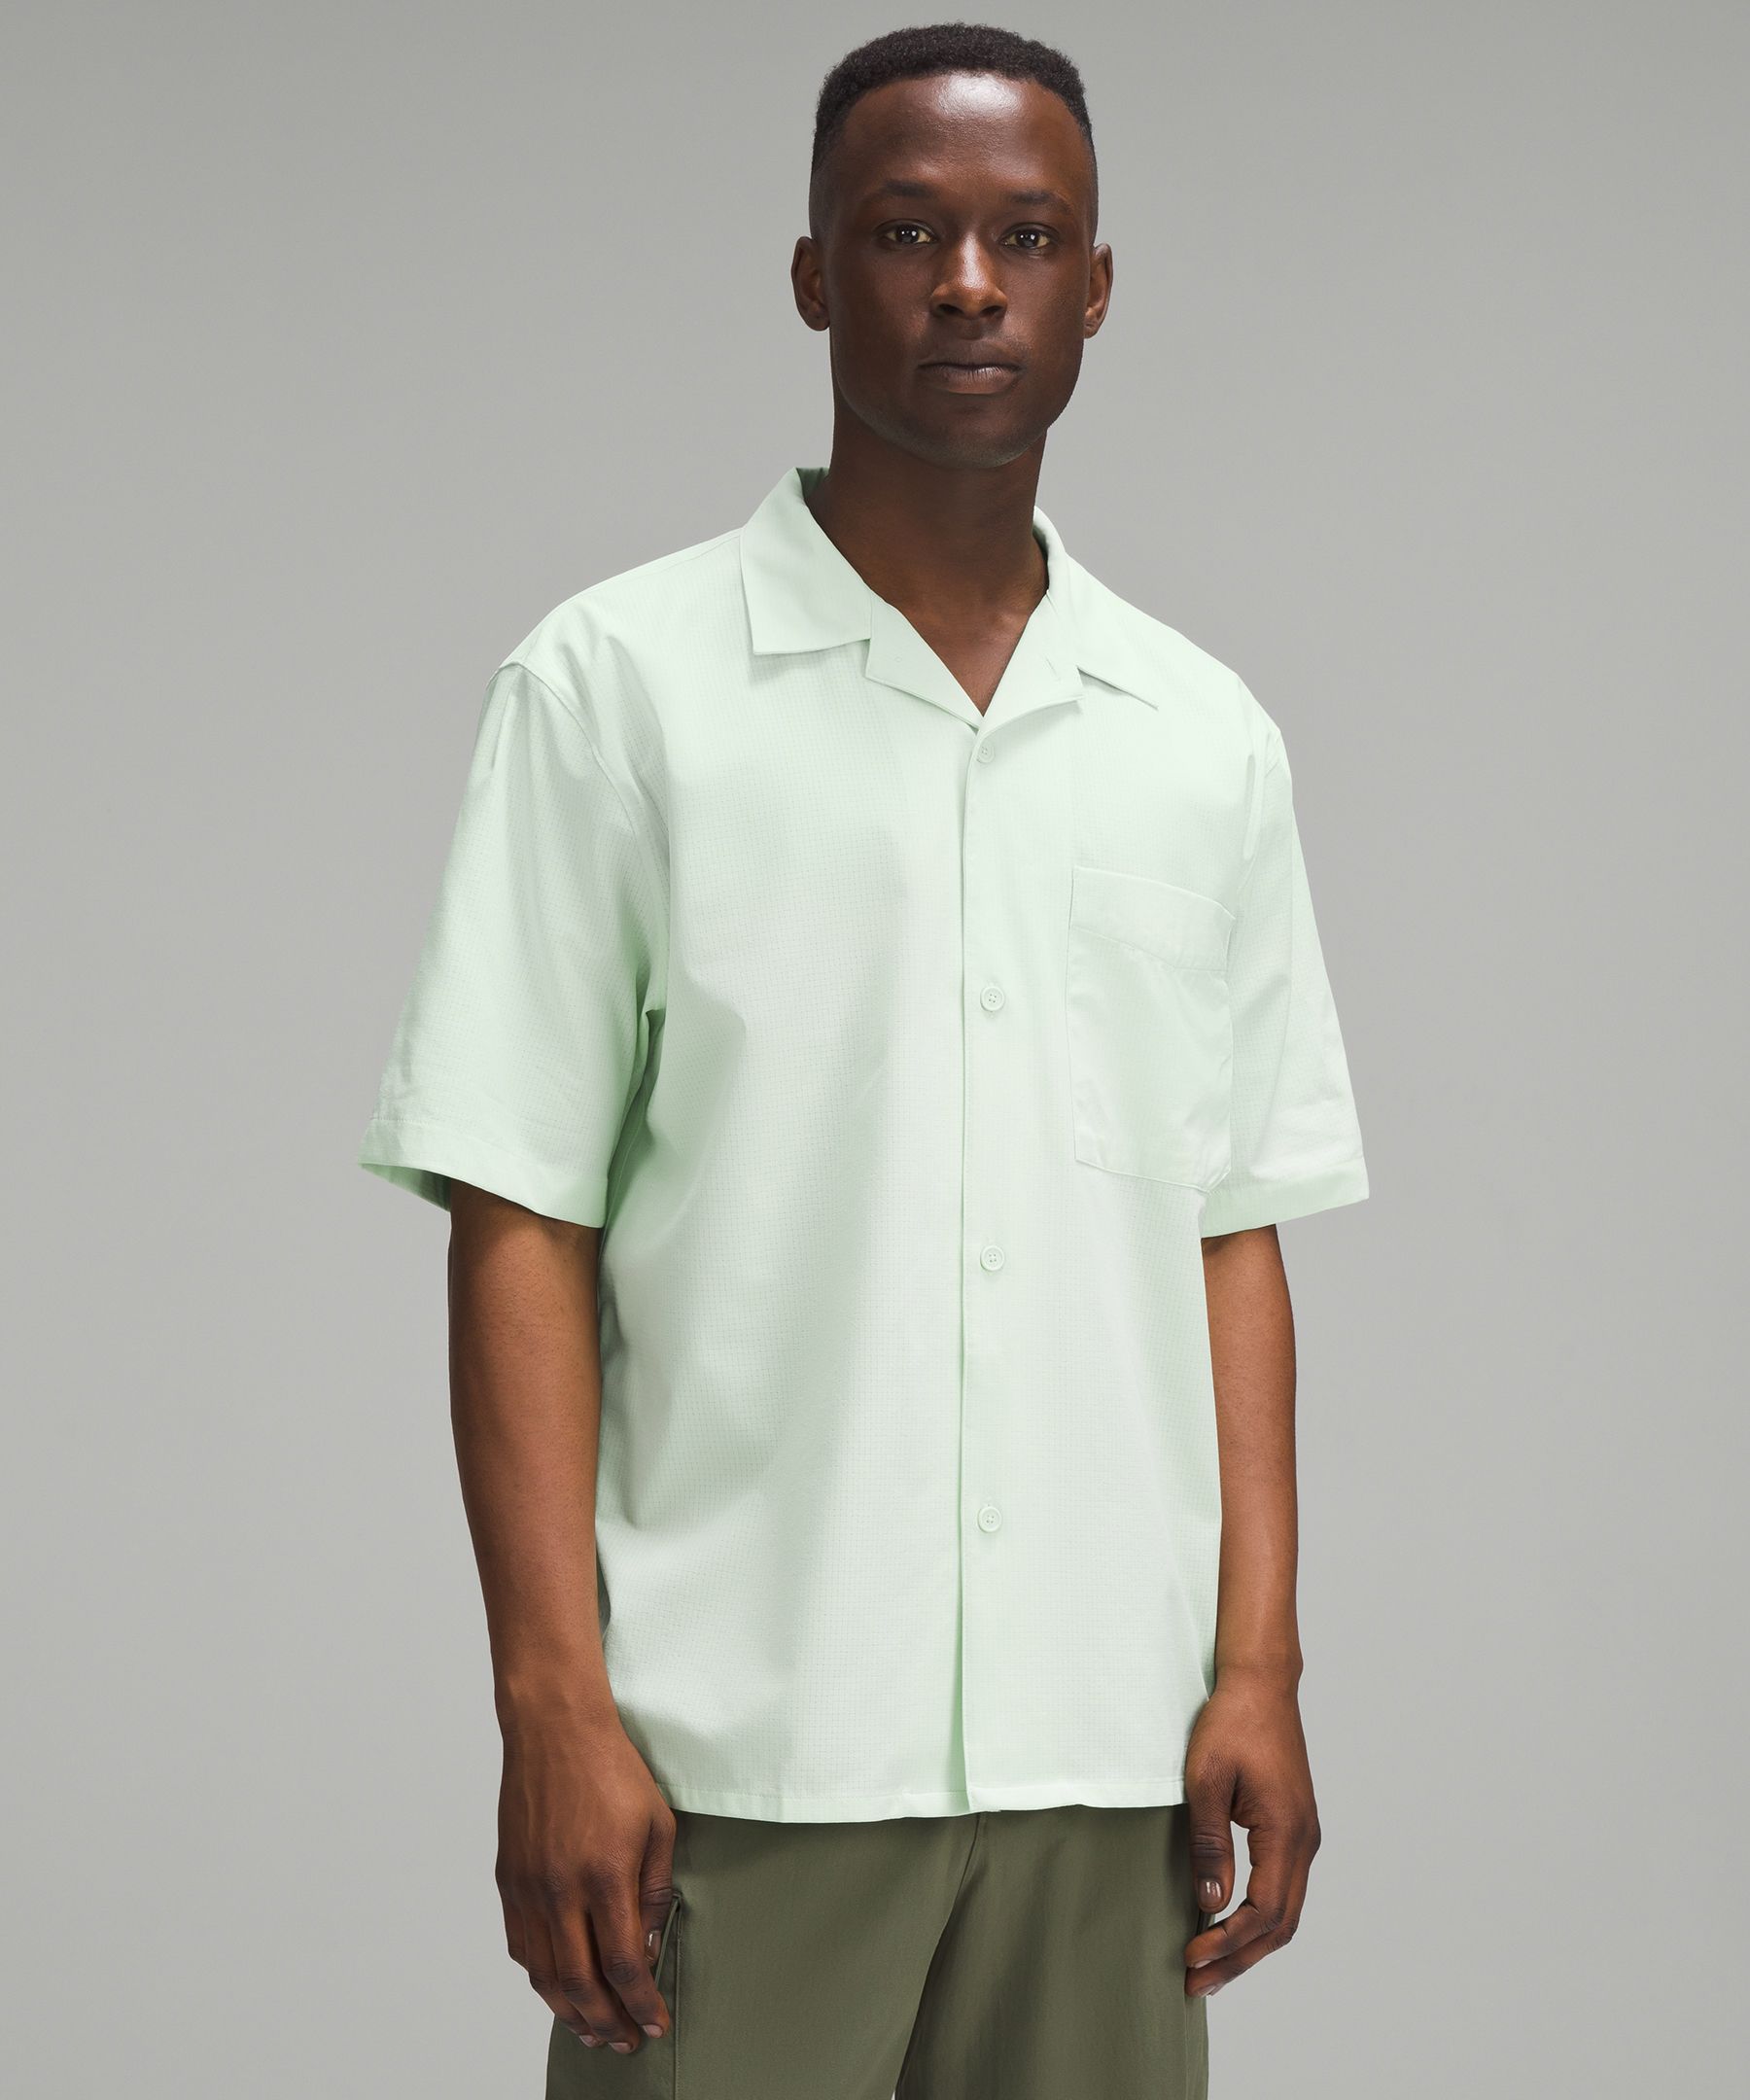 Golf Kohlrabi Green Clothes